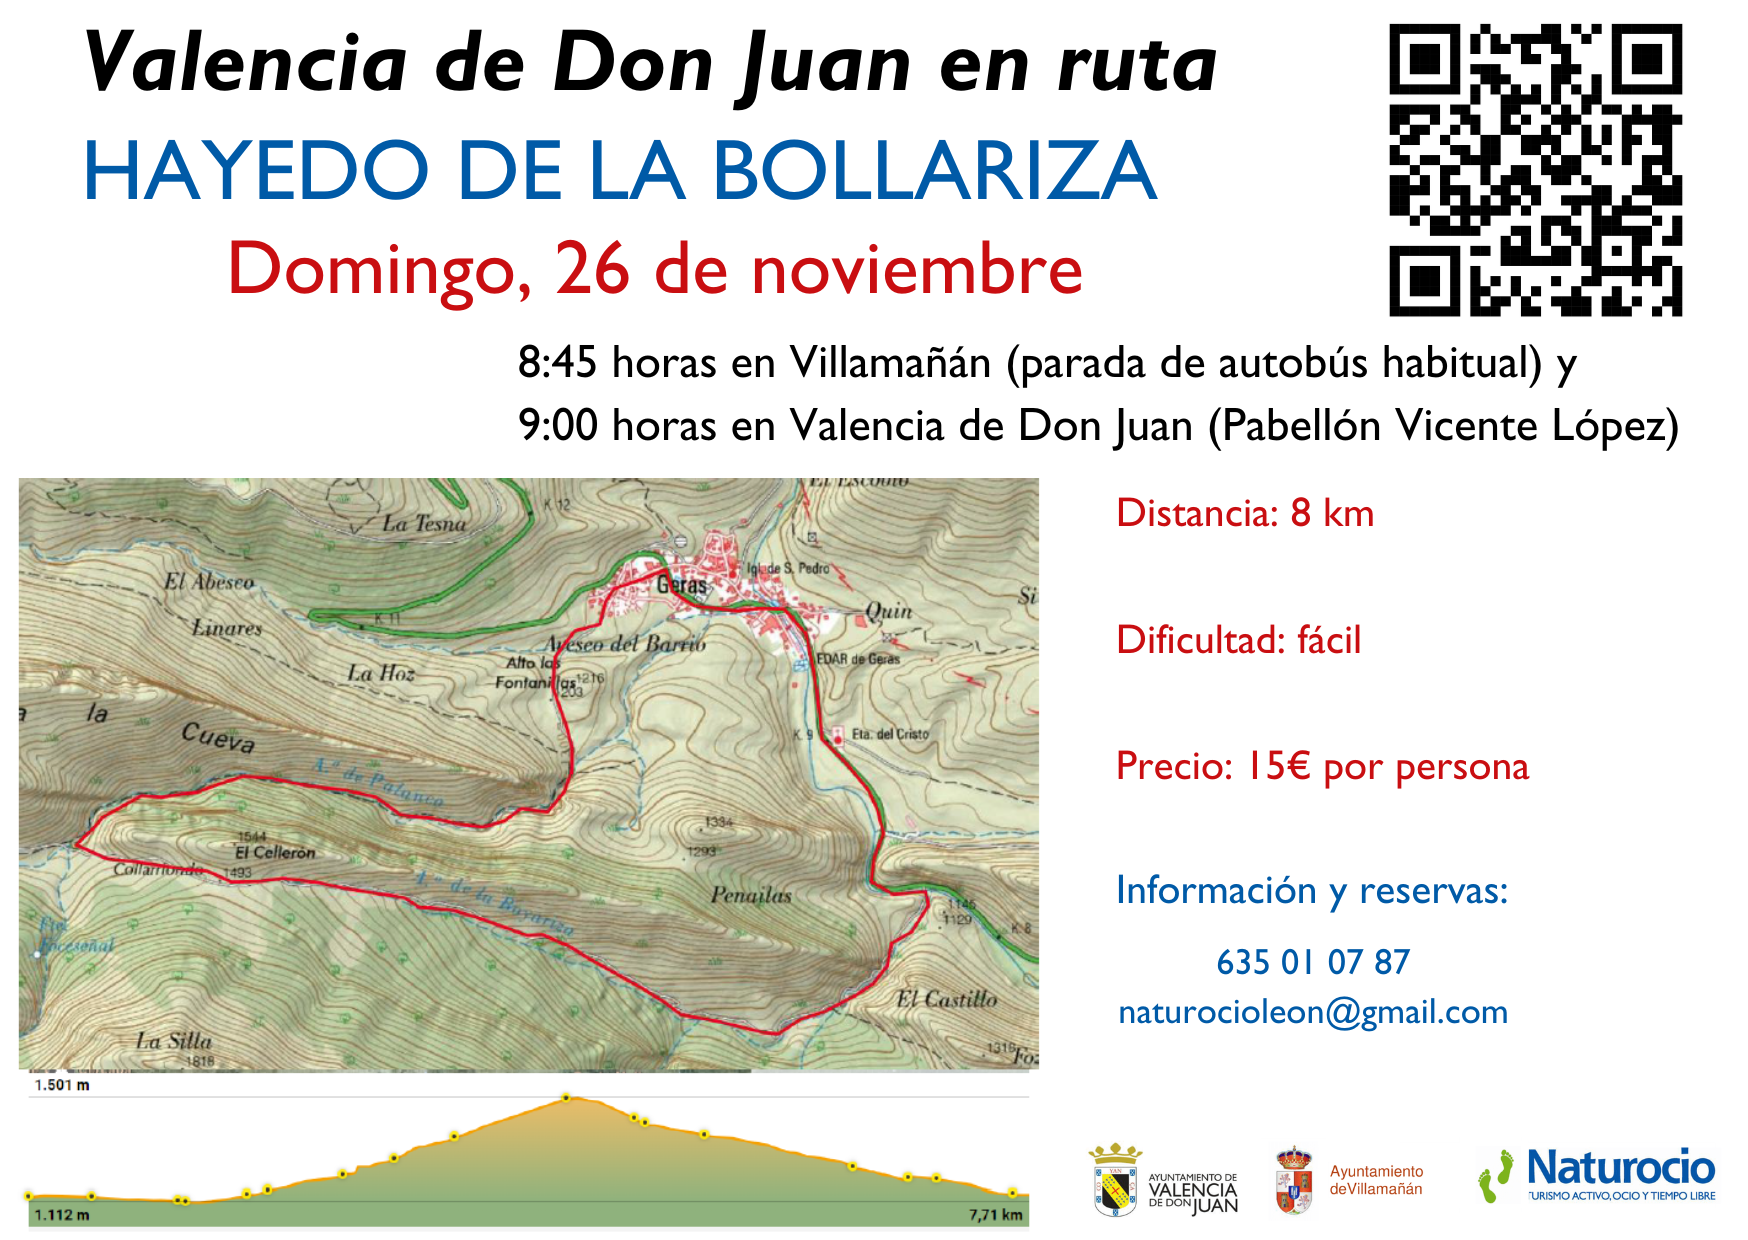 Valencia de Don Juan en ruta – “HAYEDO DE LA BOLLARIZA”